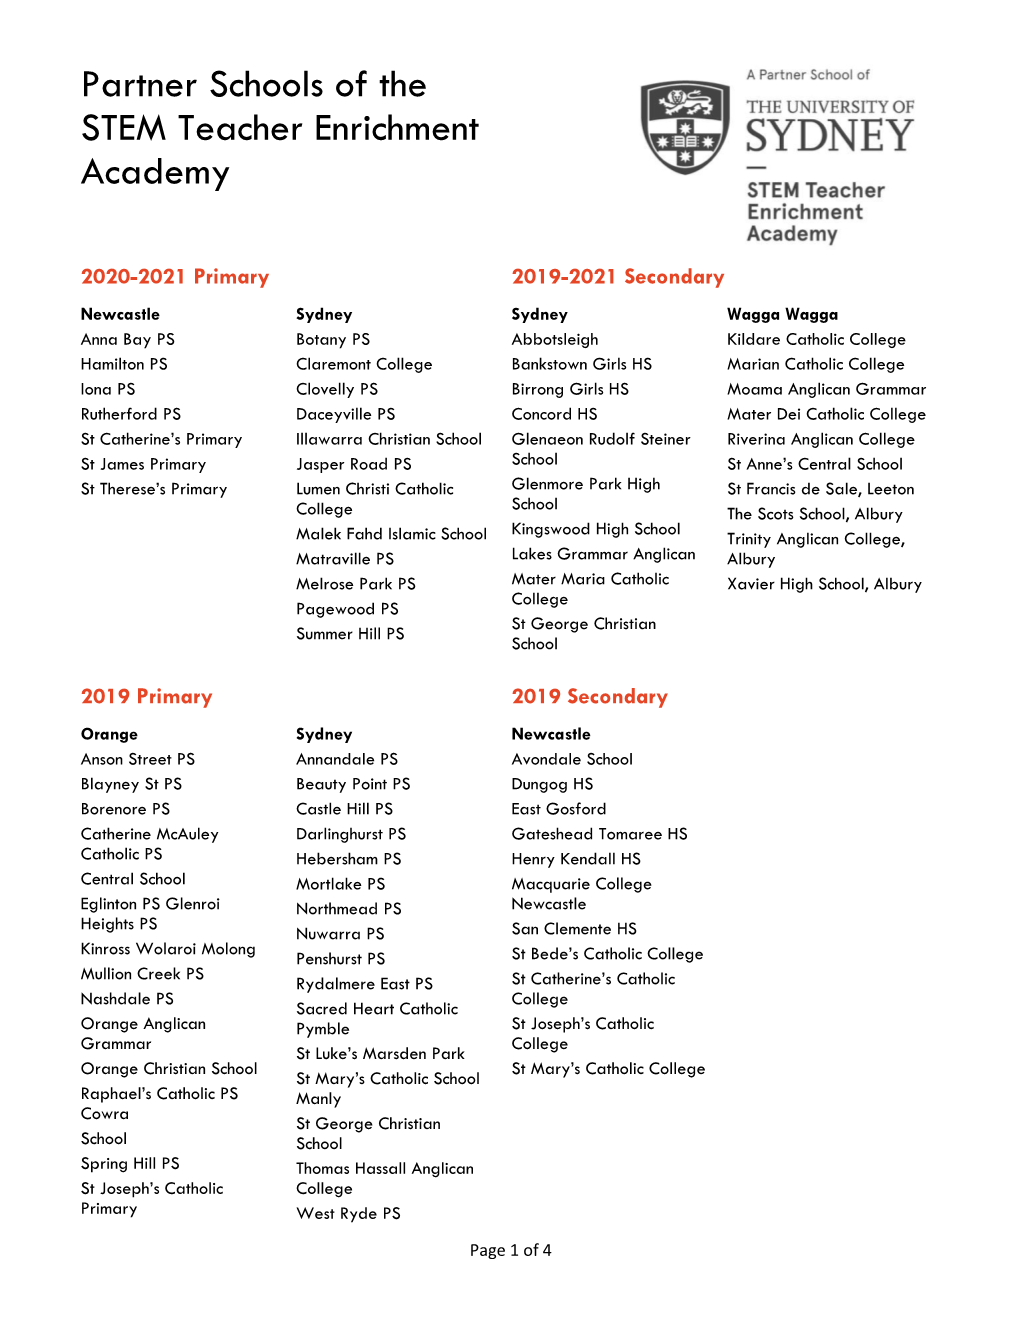 STEM Teacher Enrichment Academy Participant List